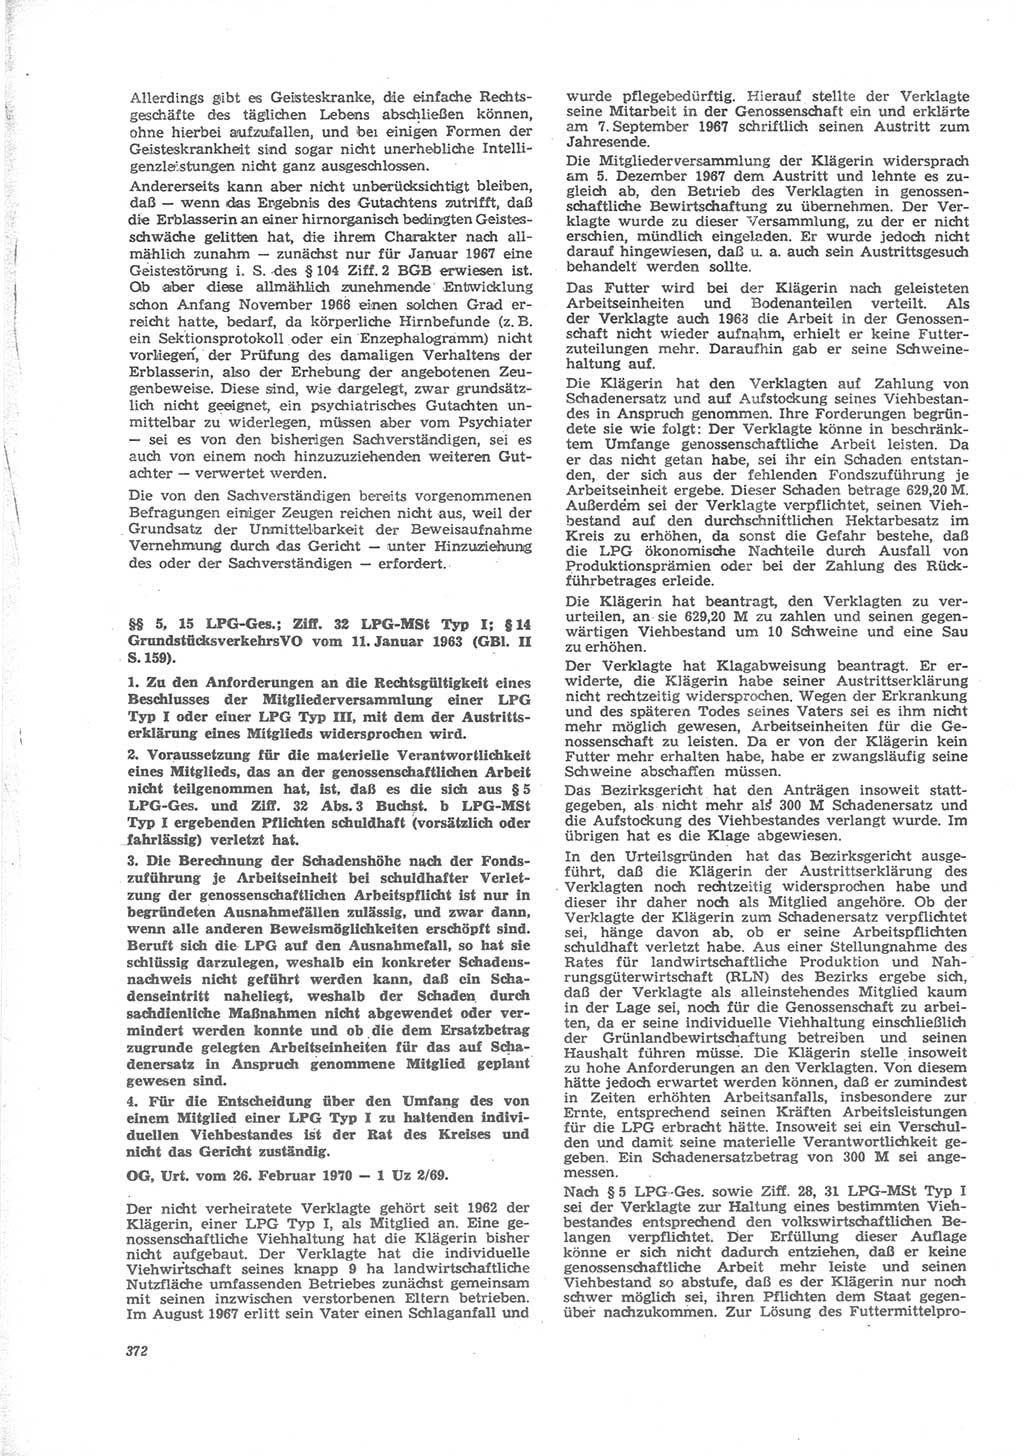 Neue Justiz (NJ), Zeitschrift für Recht und Rechtswissenschaft [Deutsche Demokratische Republik (DDR)], 24. Jahrgang 1970, Seite 372 (NJ DDR 1970, S. 372)